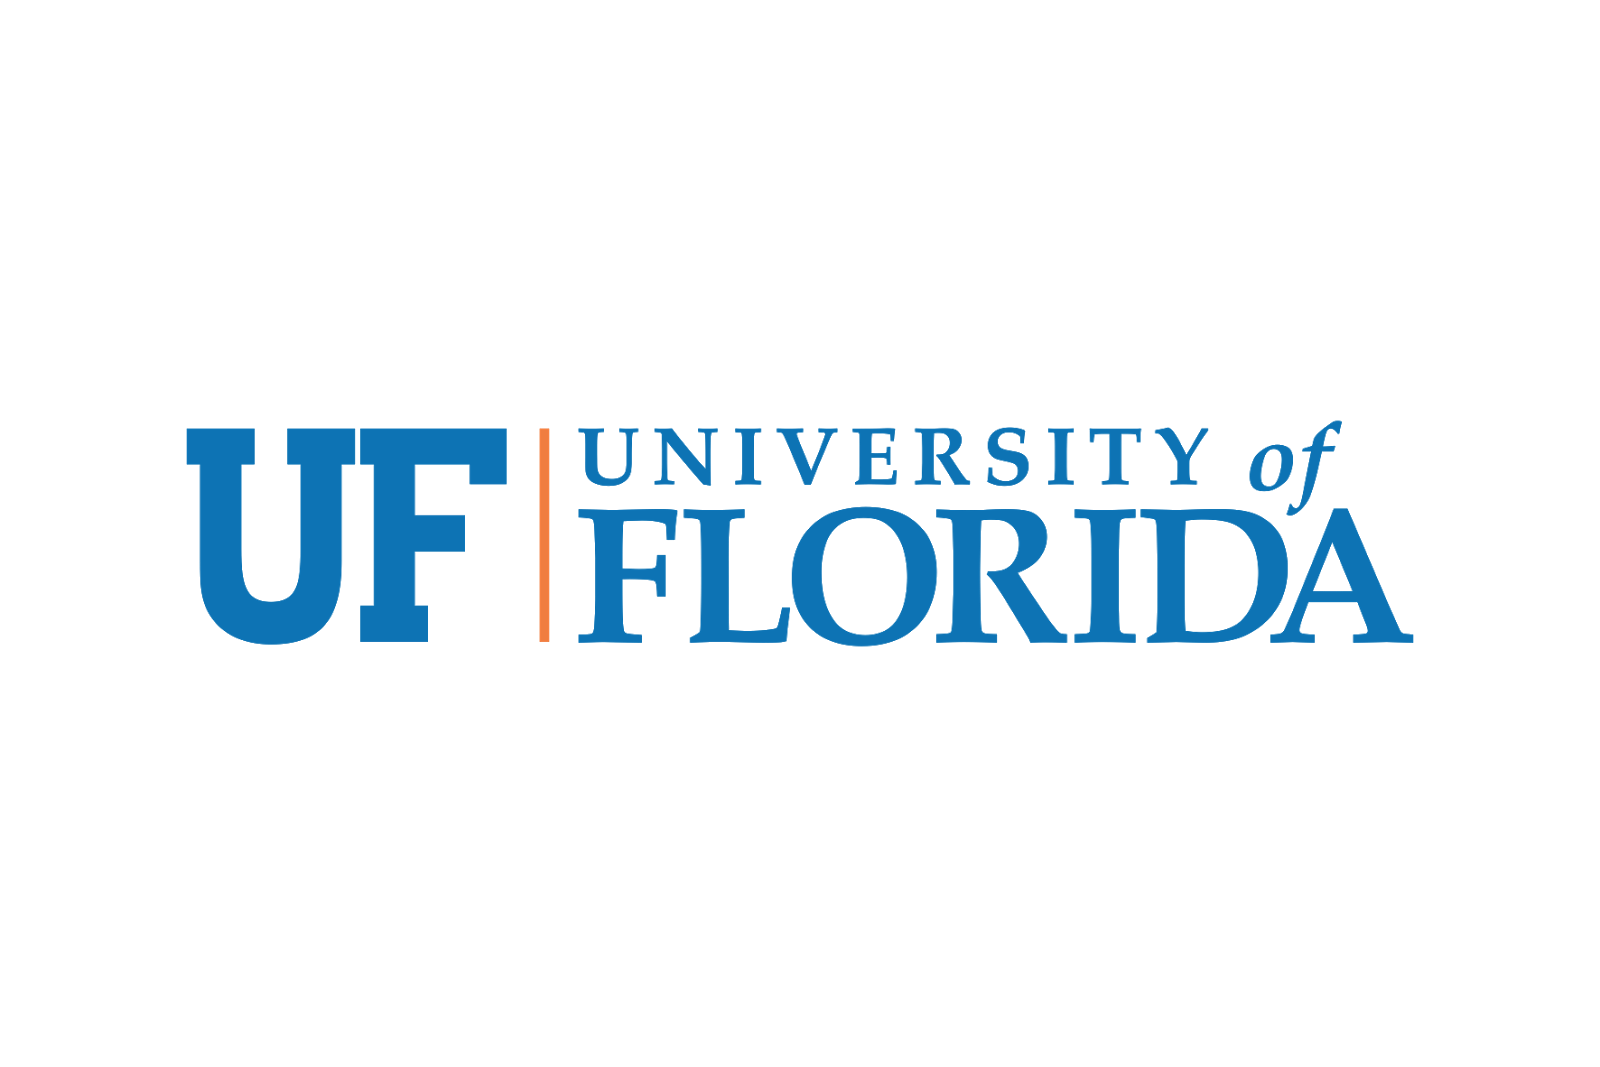 UF University of Florida